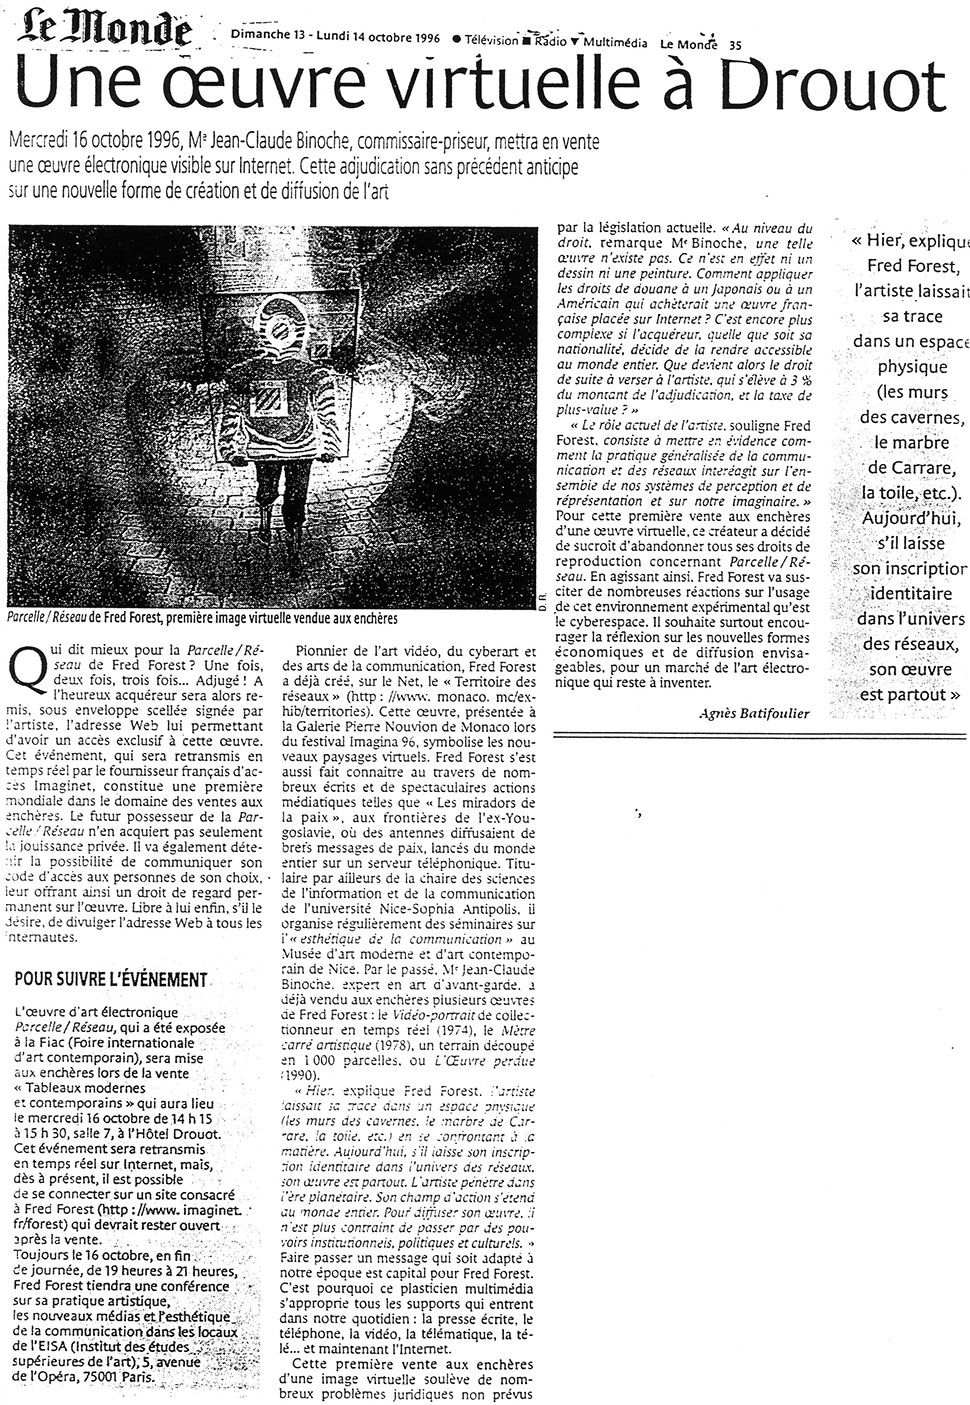 1996 Le Monde - oeuvre virtuelle à Drouot